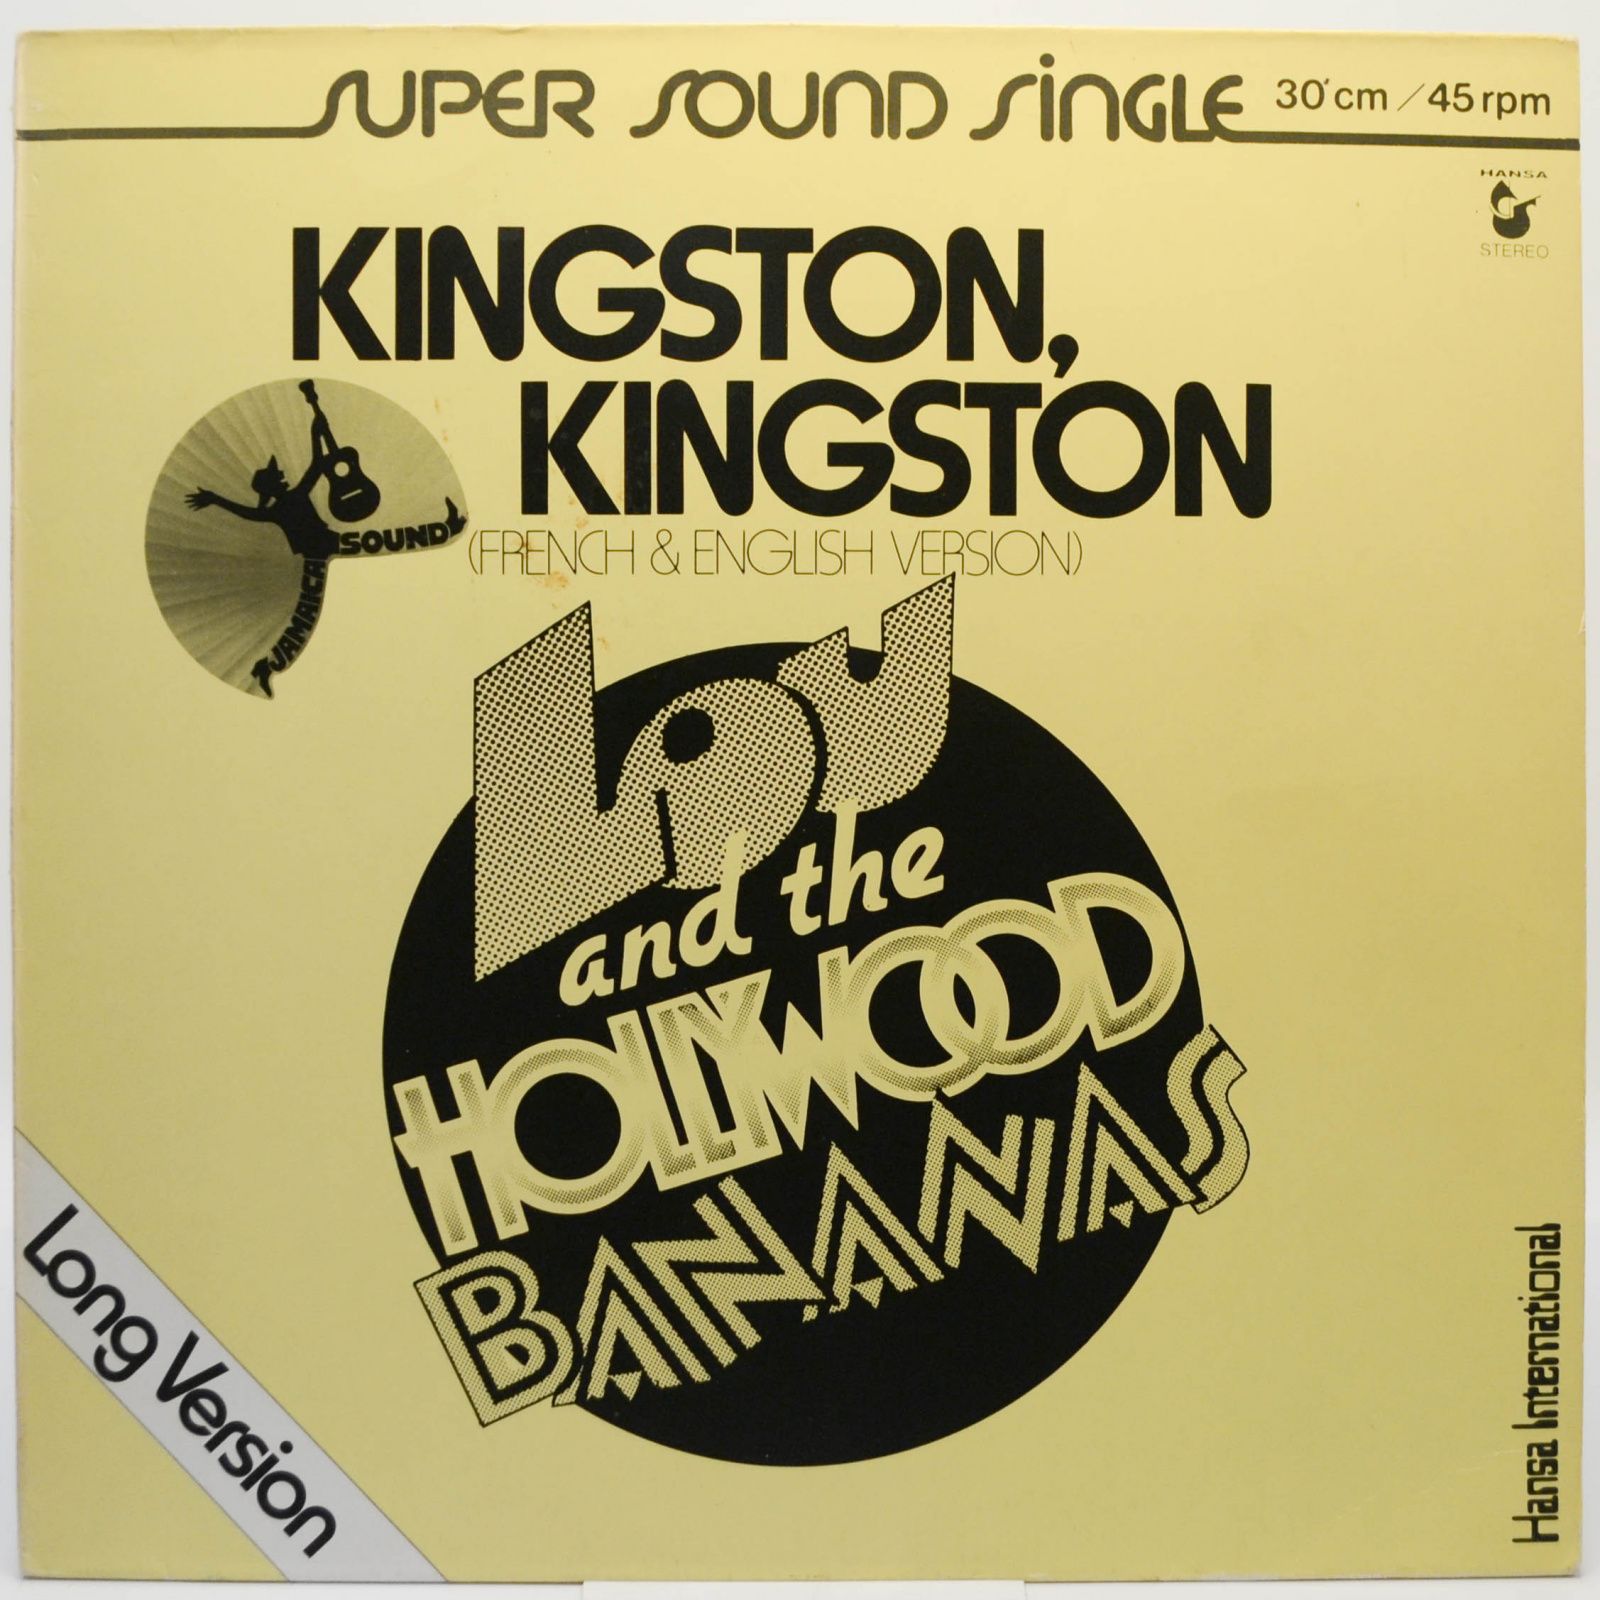 Lou And The Hollywood Bananas — Kingston, Kingston (Long Version), 1979